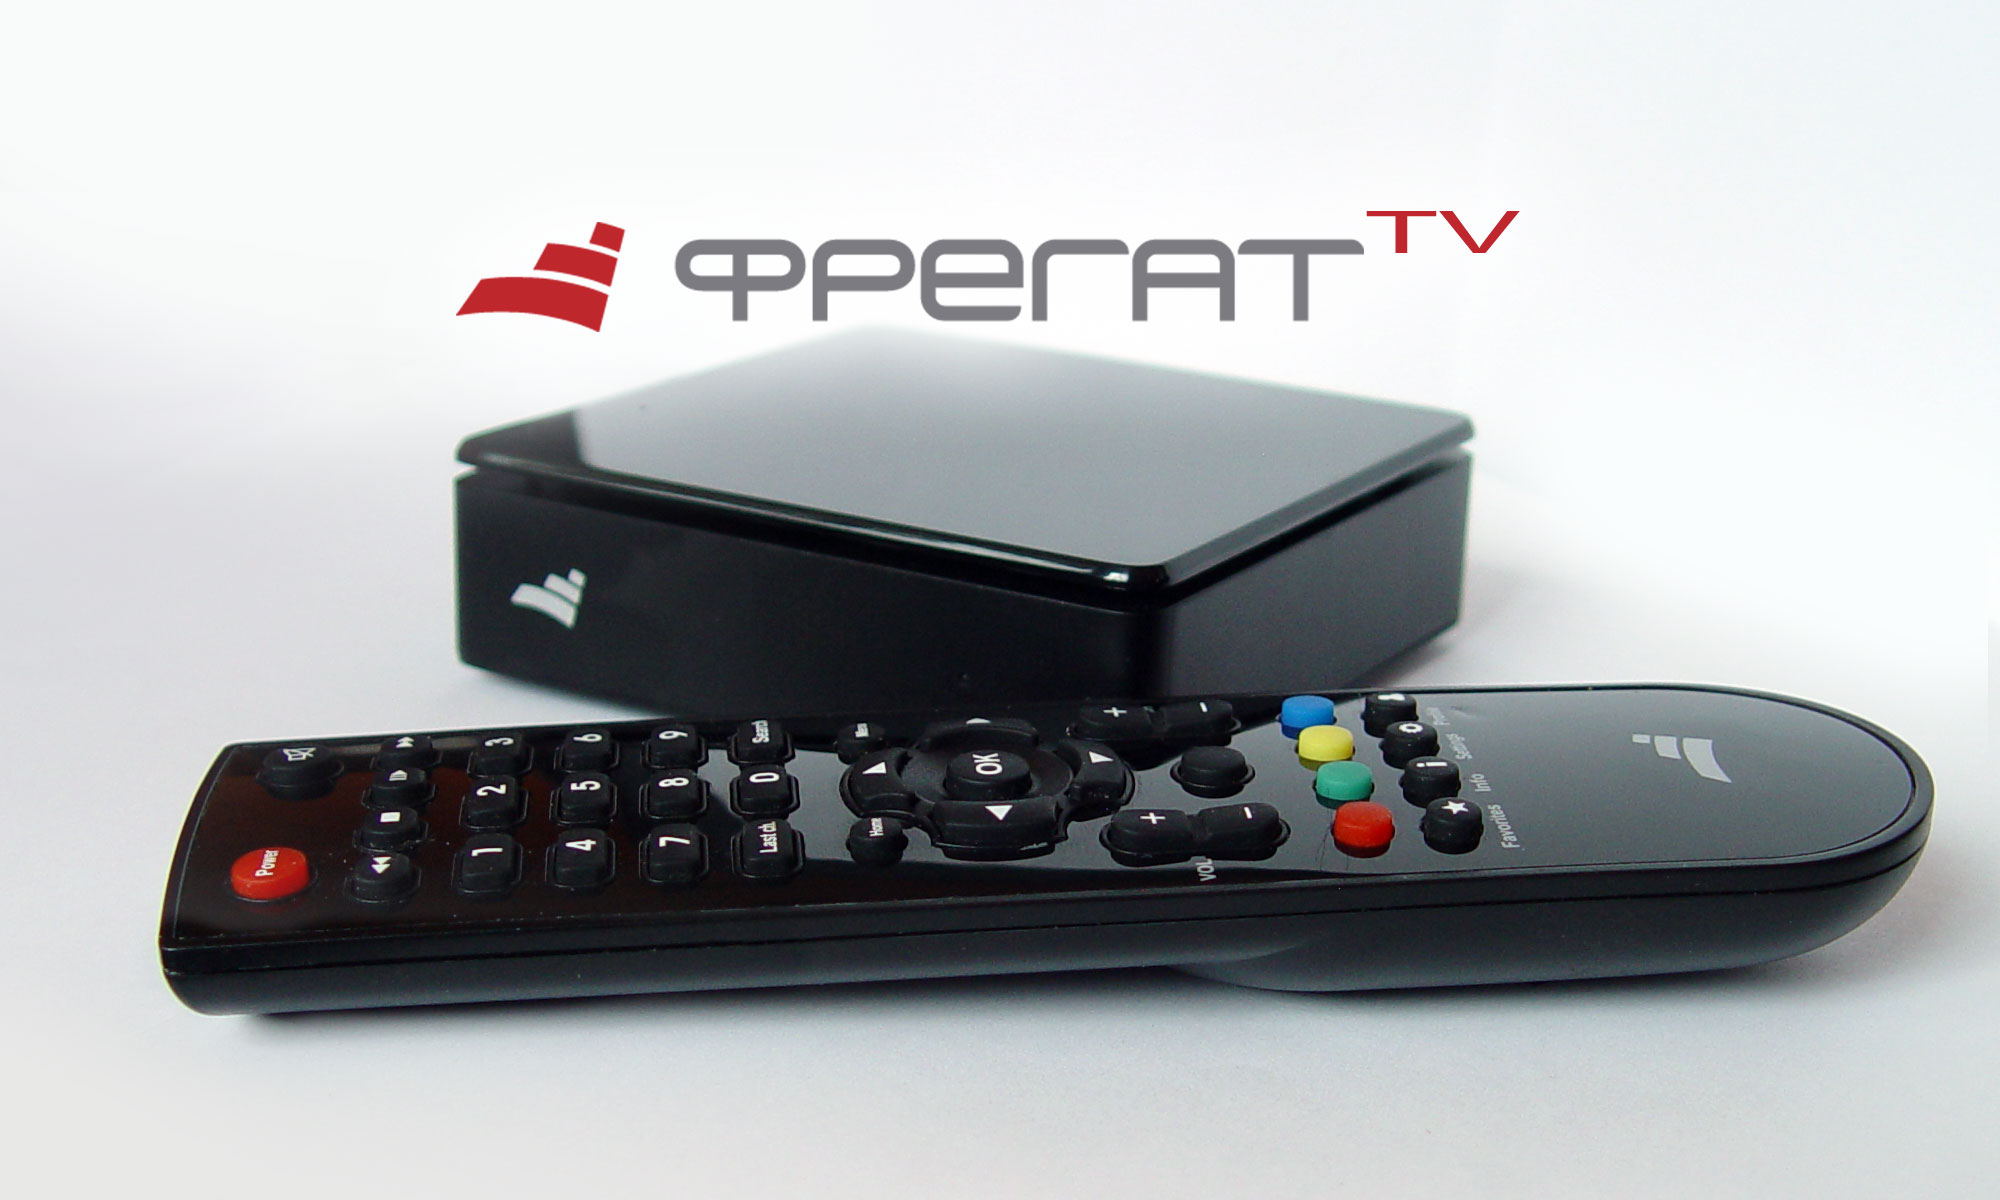 فن آوری های جدید: در Dnieper با استفاده از تلویزیون Frigate می توانید تلویزیون هوشمند را از یک تلویزیون معمولی تهیه کنید